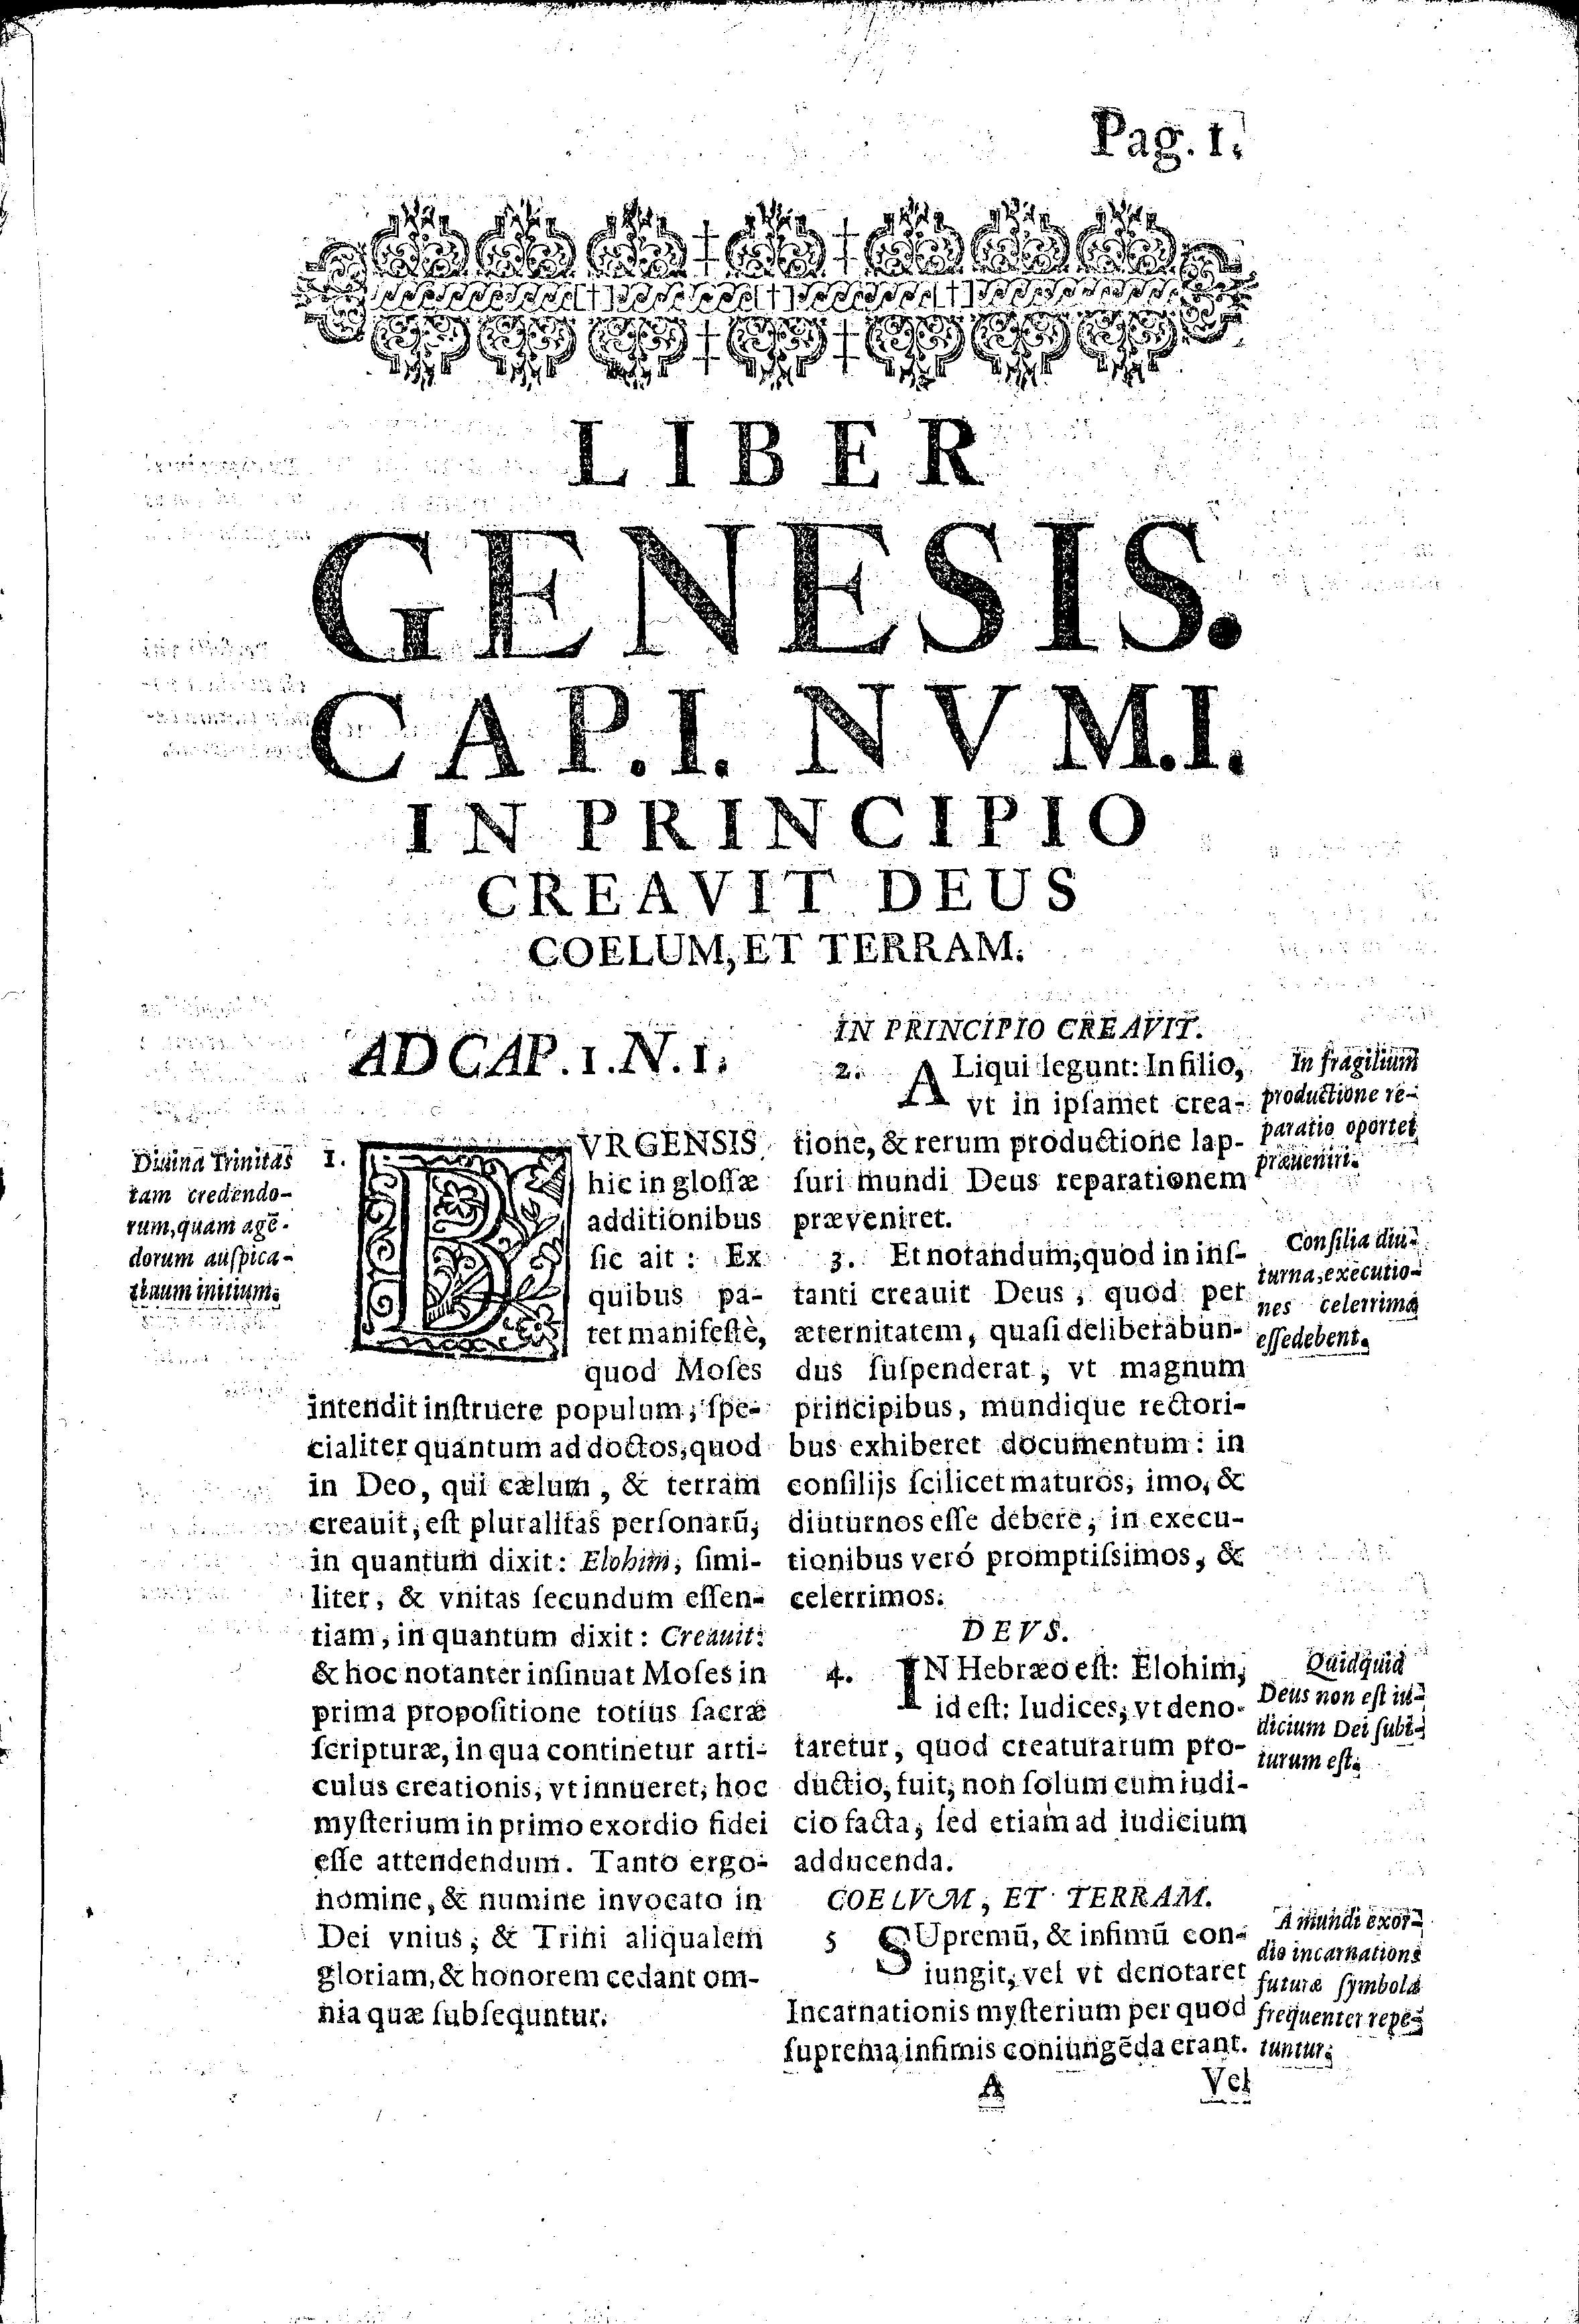 Liber Genesis. Cap.I. Nvm.I. In principio creavit Deus coelum et terram